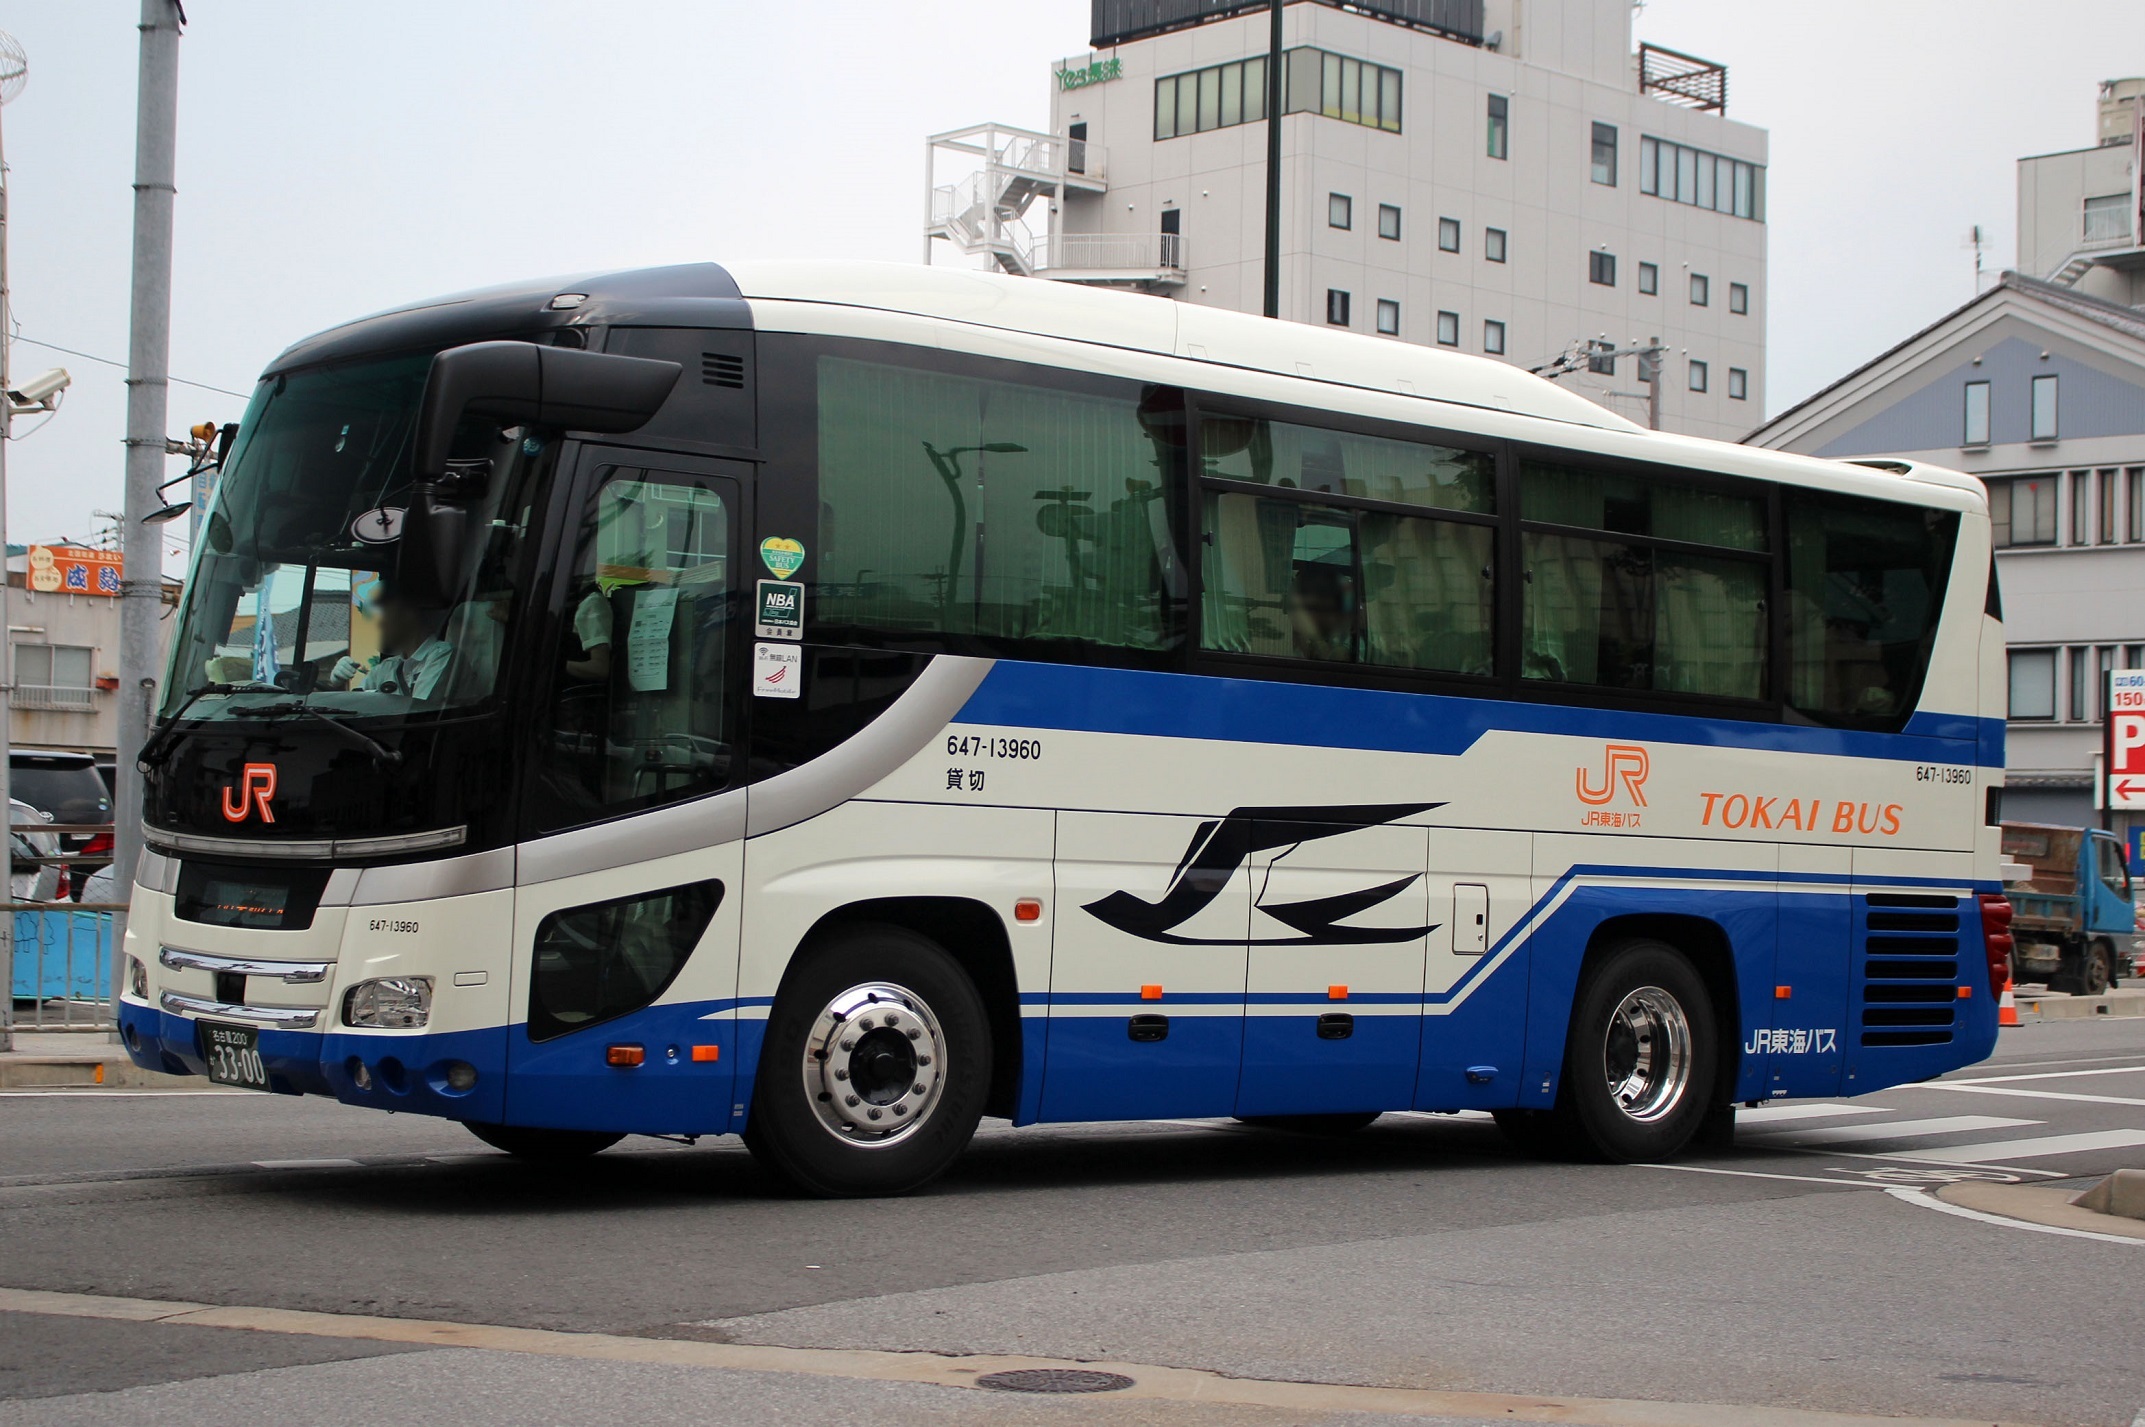 JR東海バス 647-13960